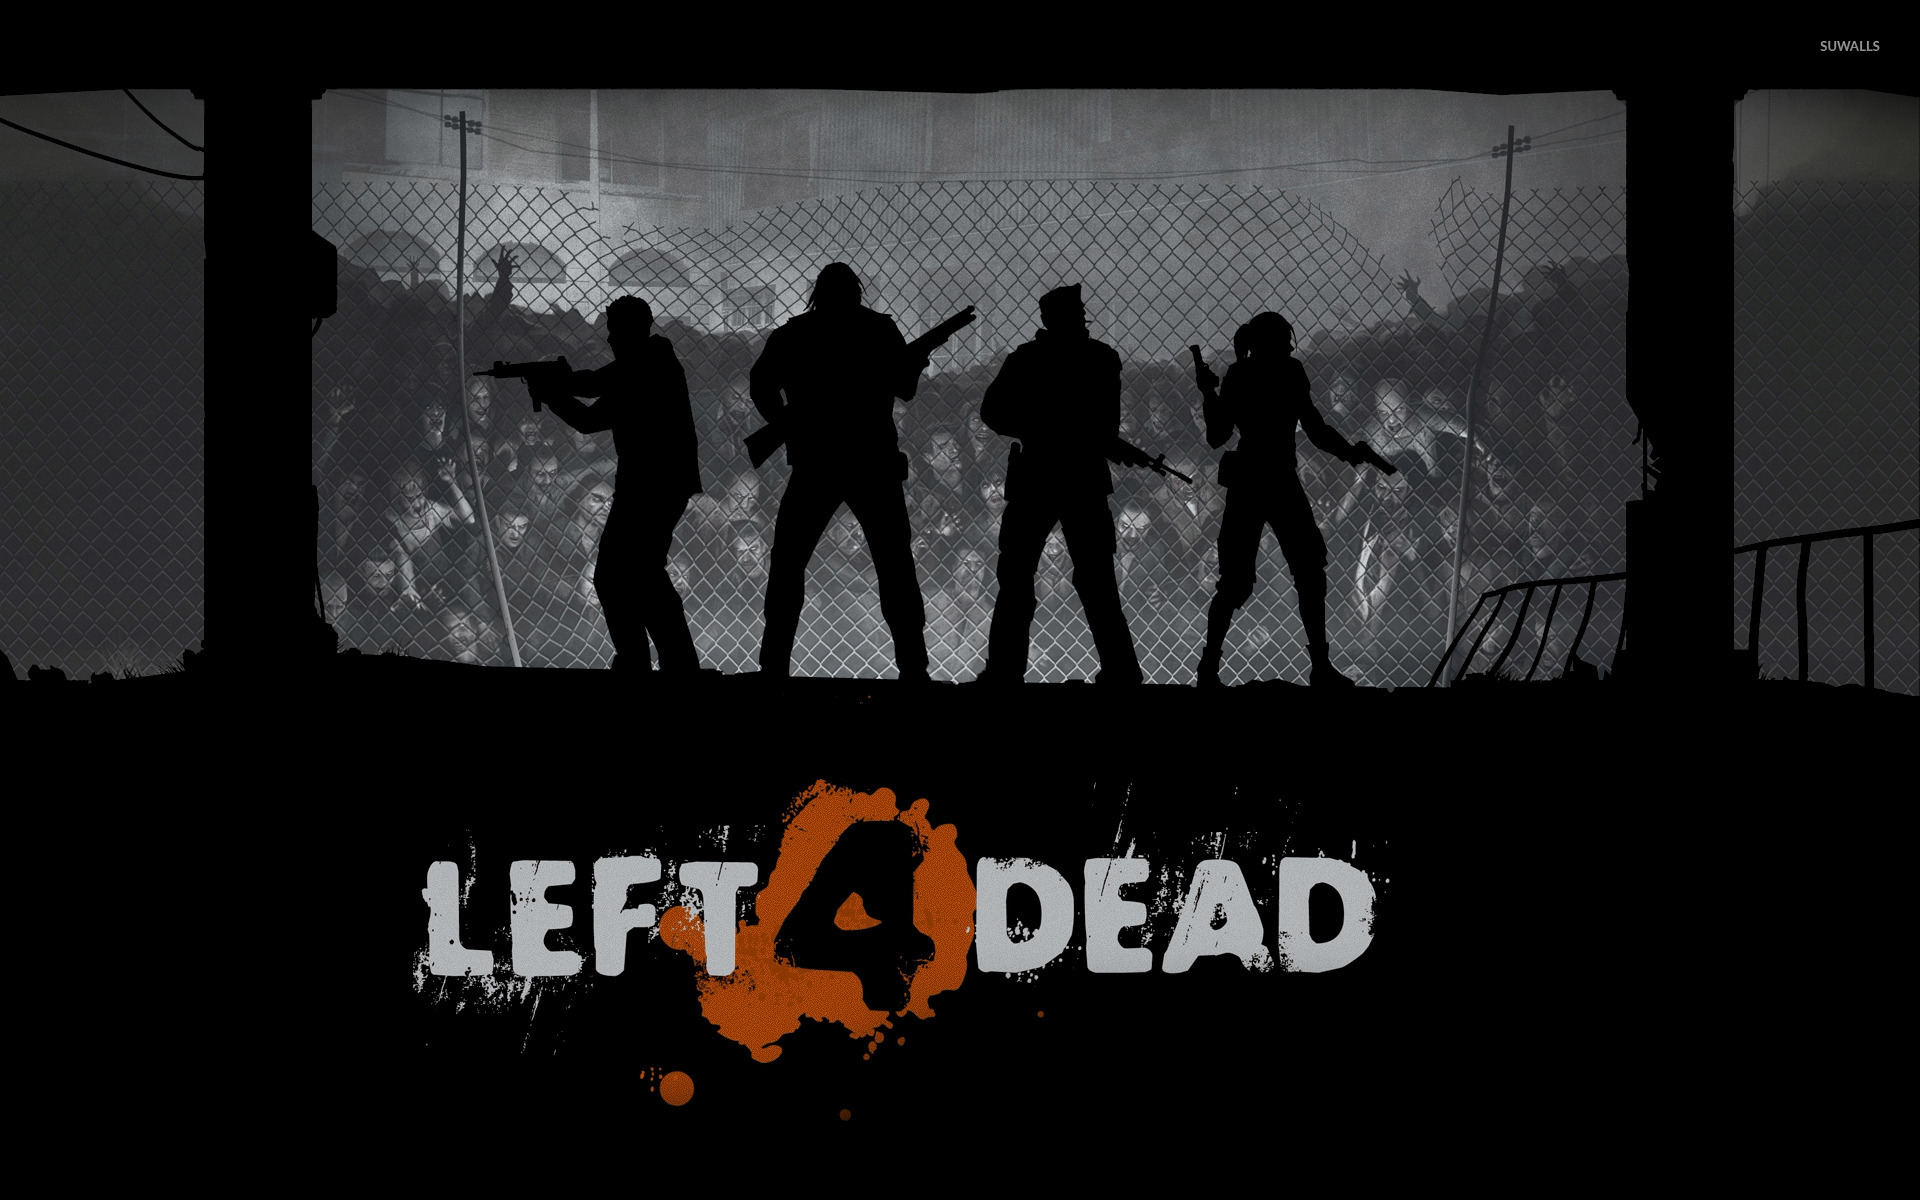 Left 4 Dead Фон